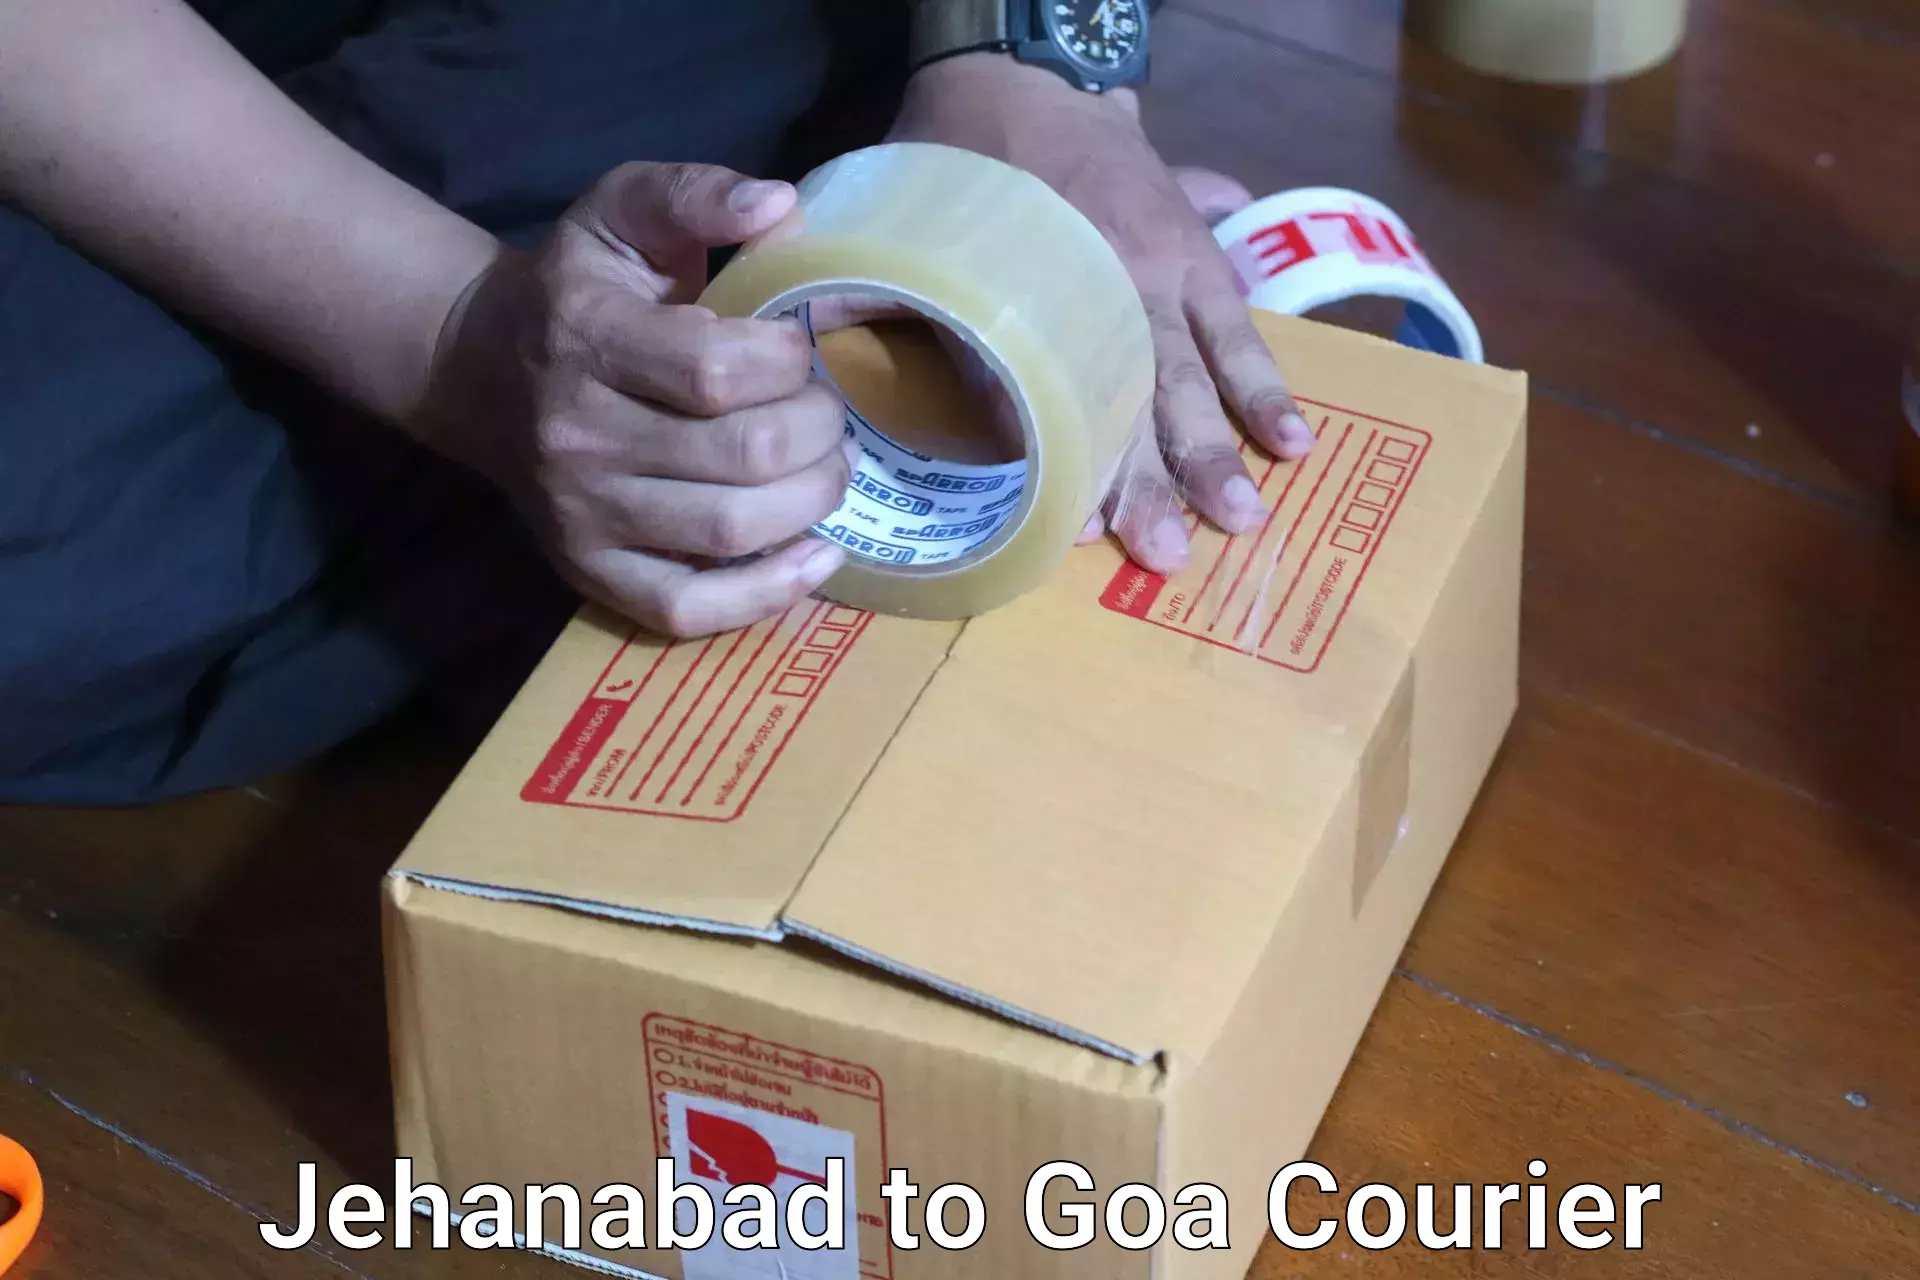 Luggage shipment tracking Jehanabad to Goa University